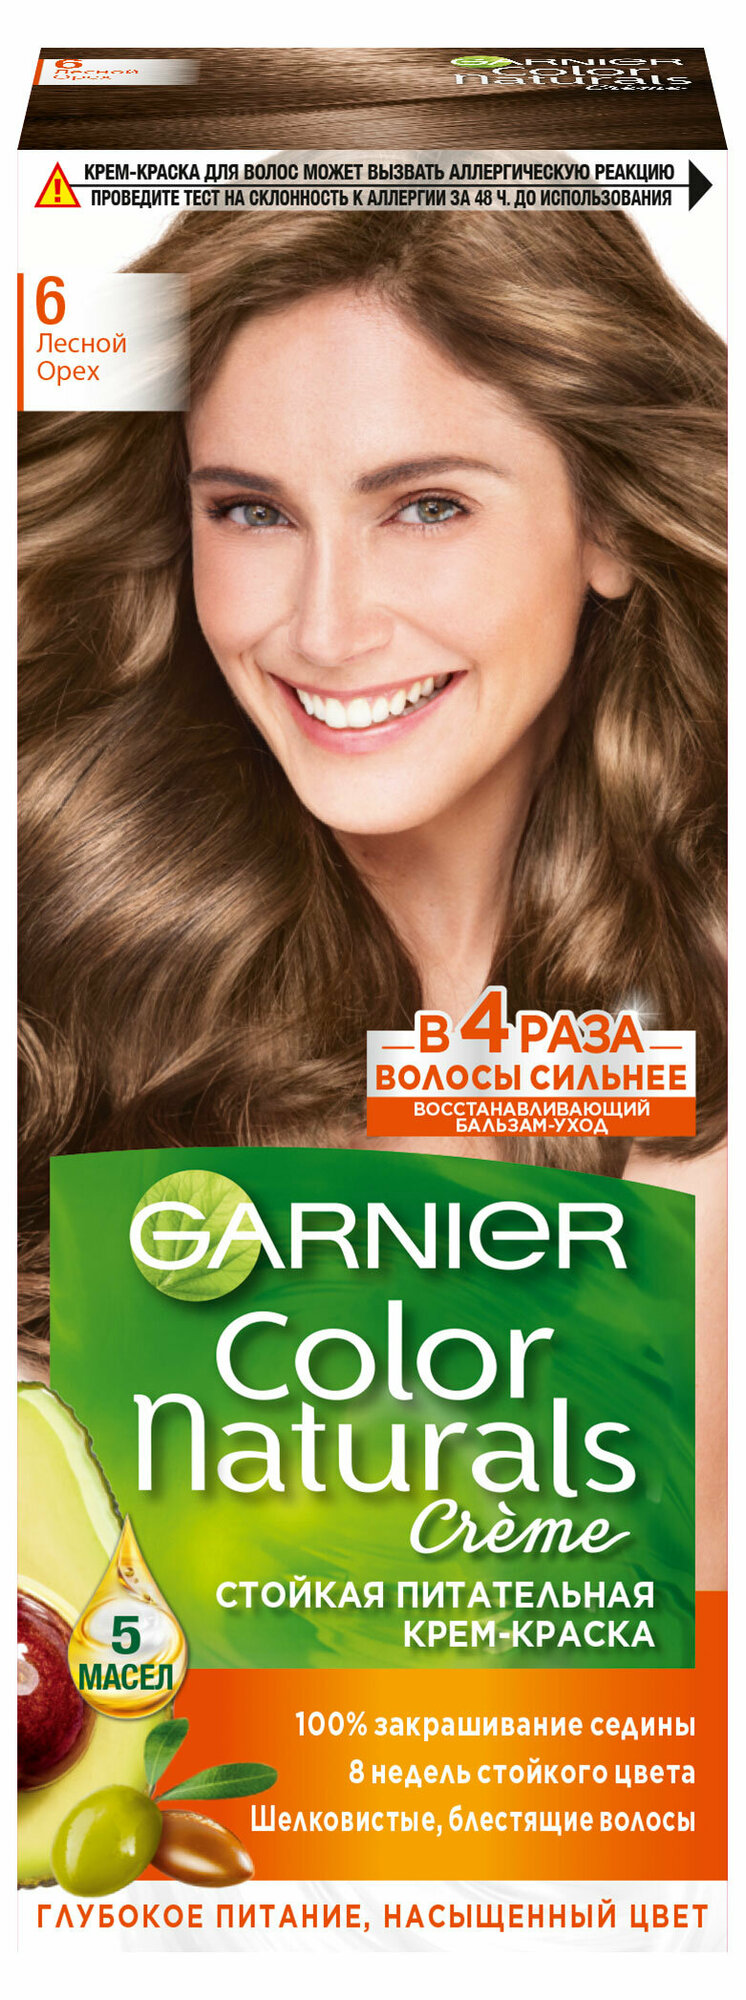 Крем-краска для волос Garnier Стойкая питательная Color Naturals оттенок 6 Лесной орех